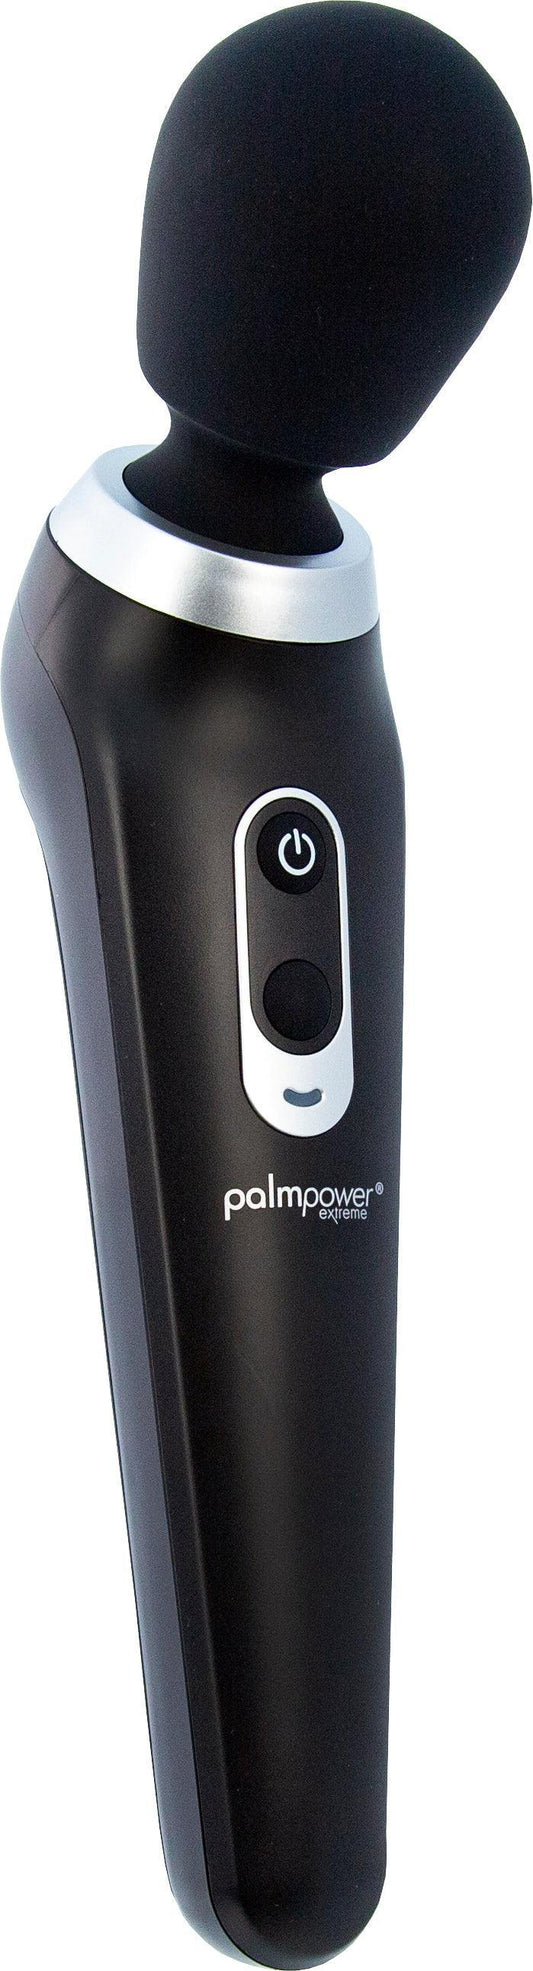 PalmPower Extreme Black - Take A Peek